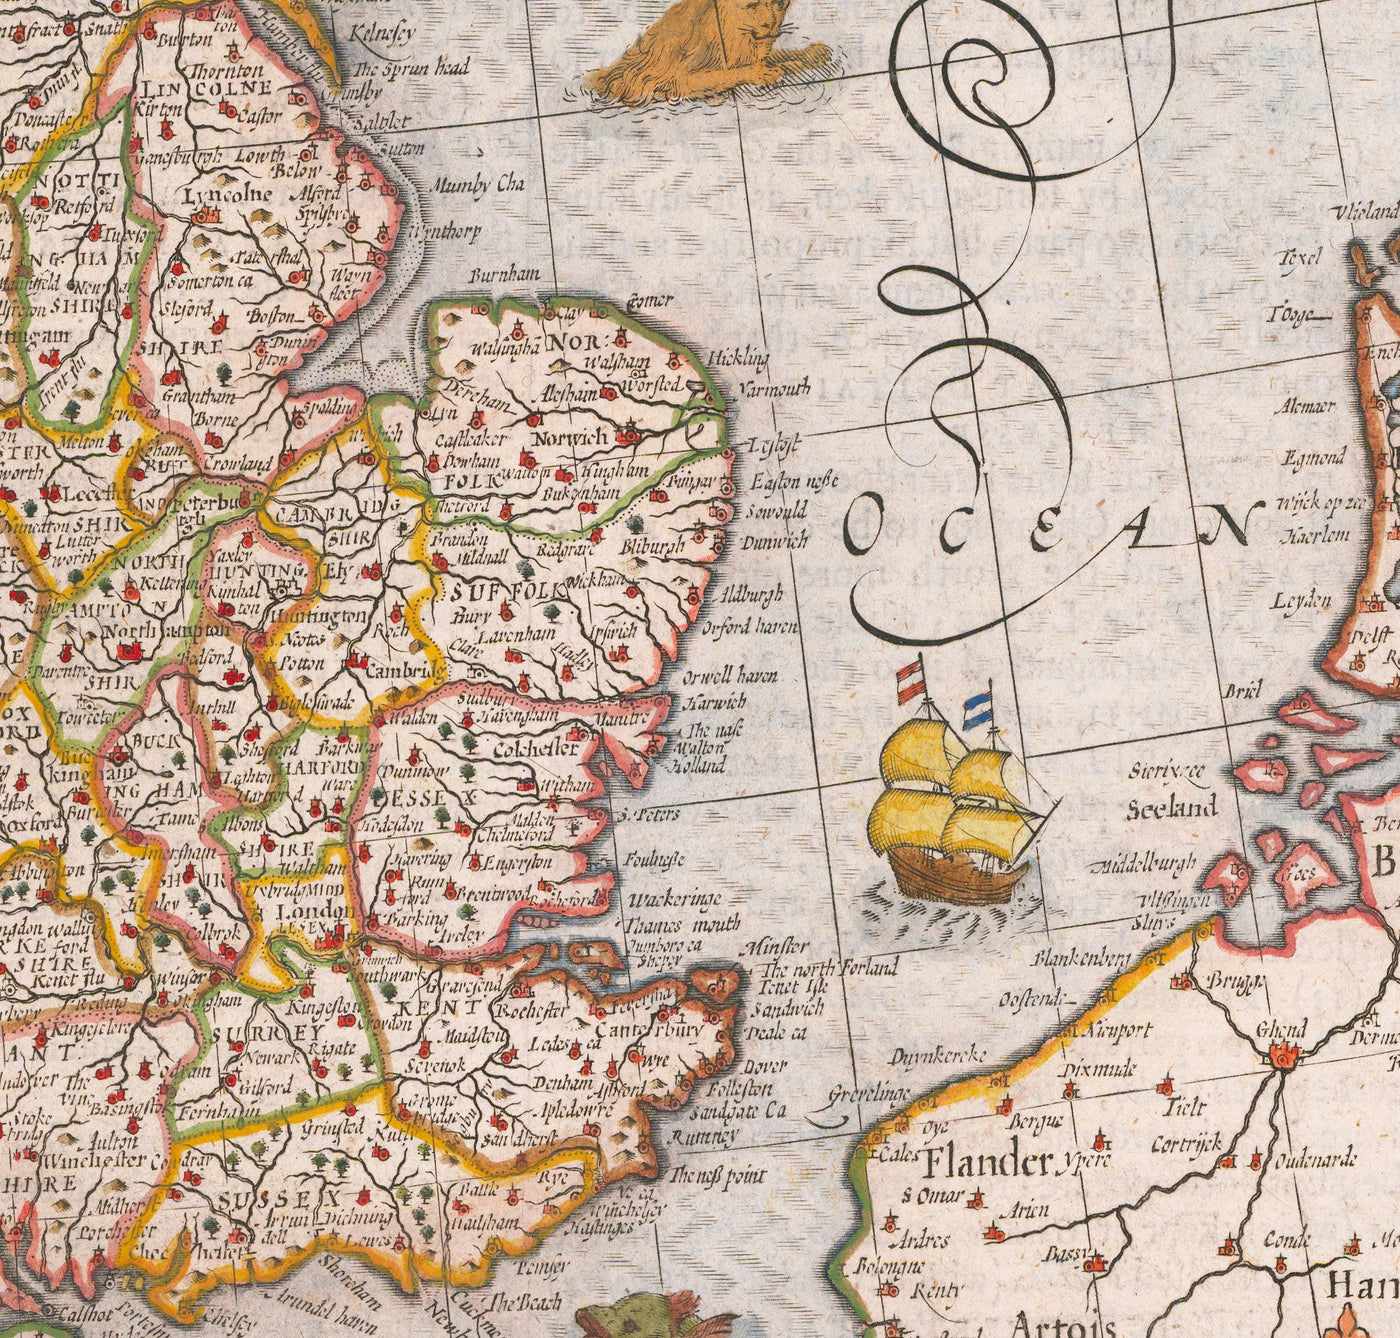 Antiguo mapa de las Islas Británicas en 1611 por John Speed - Reino Unido, Inglaterra, Escocia, Gales, Irlanda